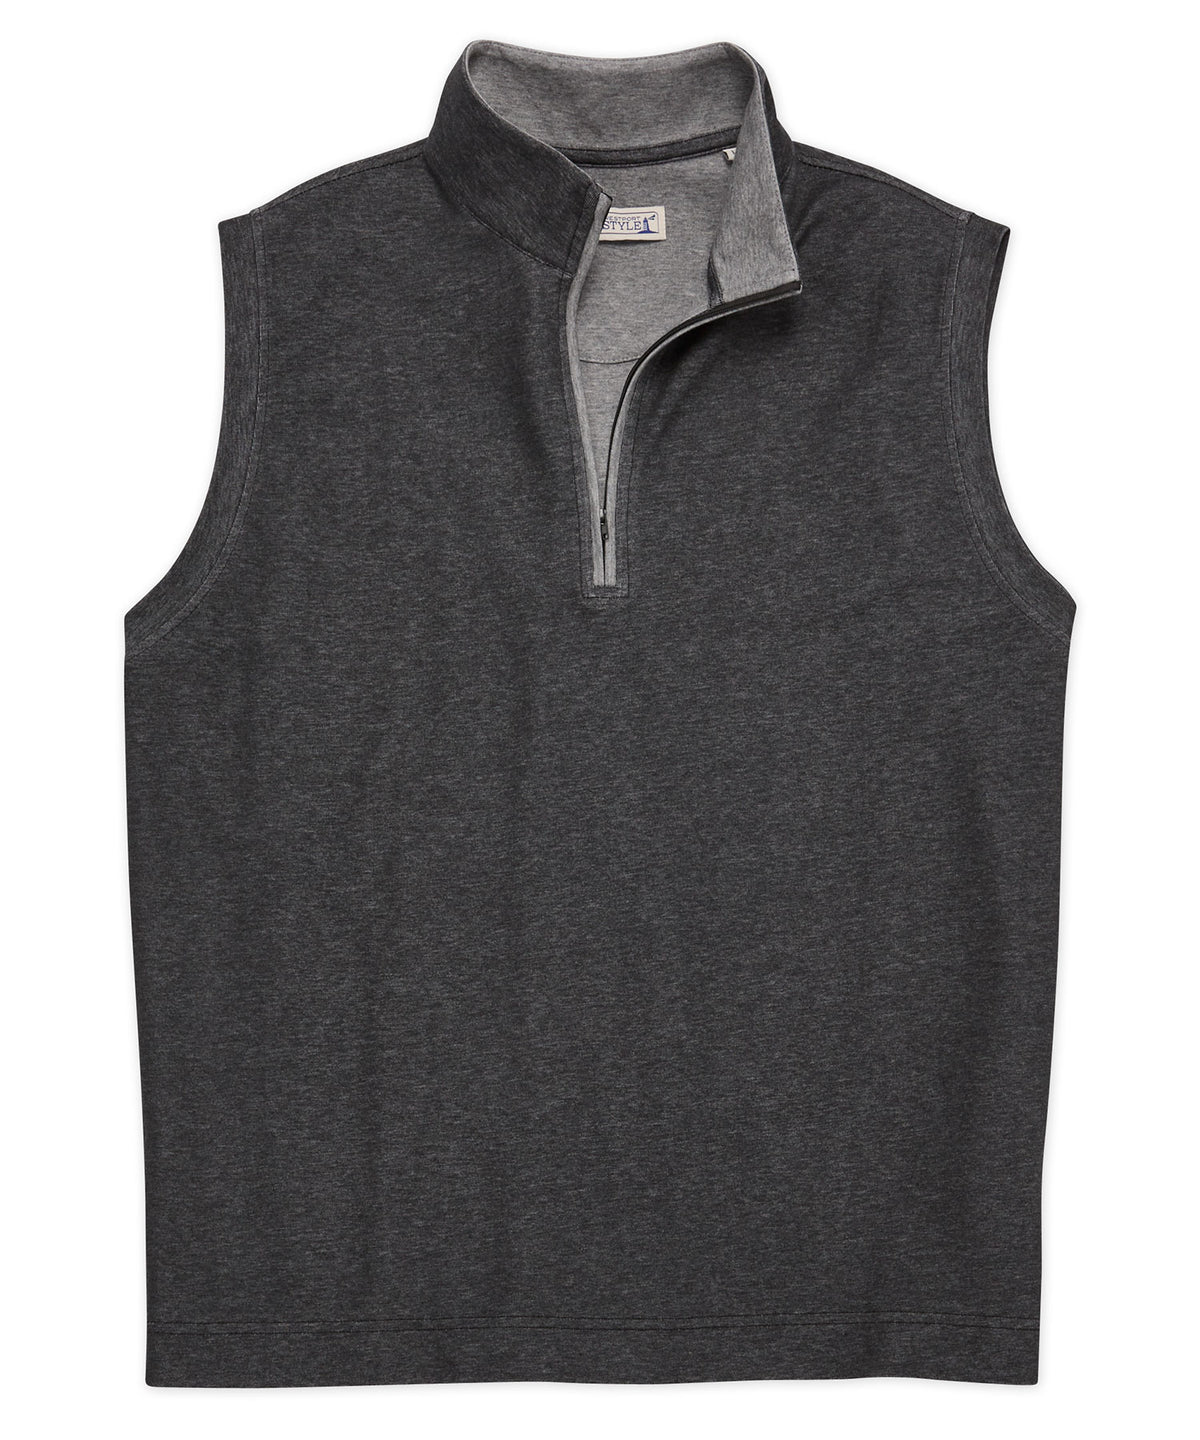 Westport Lifestyle Melange Quarter-Zip Vest, Men's Big & Tall